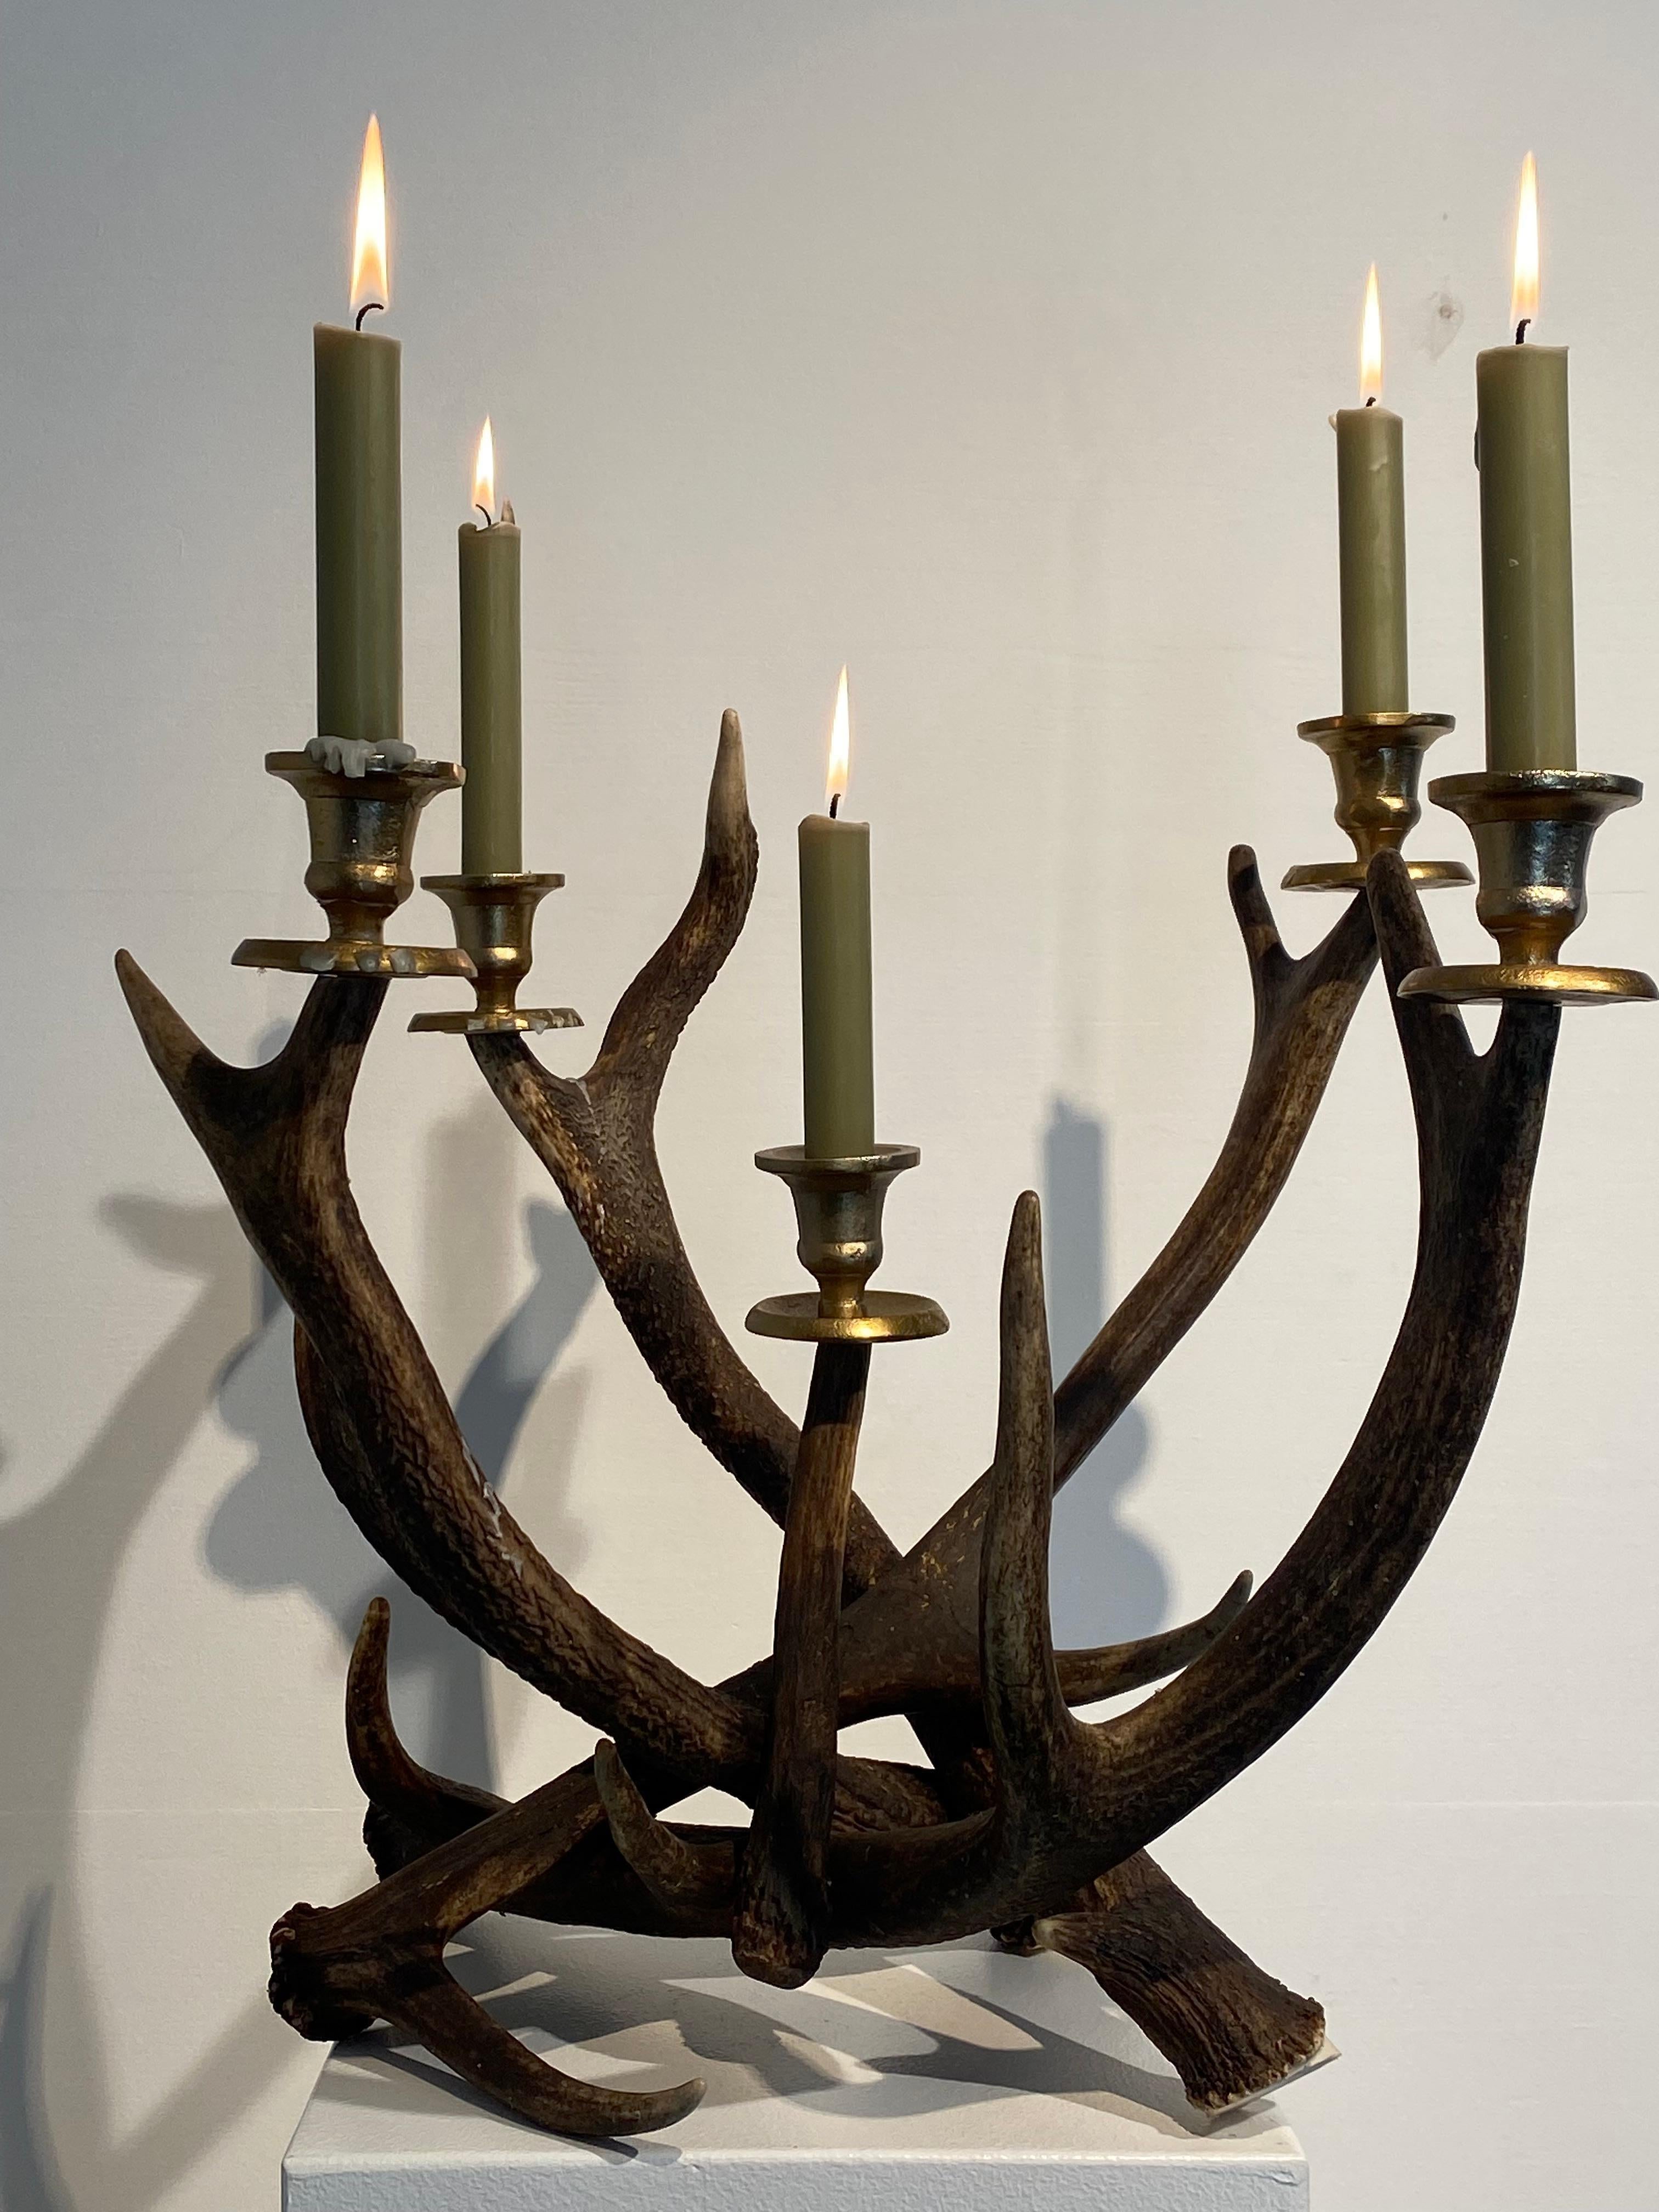 Eleganter und rustikaler Kerzenhalter aus Hirschhörnern,
elegantes Objekt mit 5 Kerzenhaltern, warmer Glanz und Patina der Hörner,
sehr dekorativer Artikel